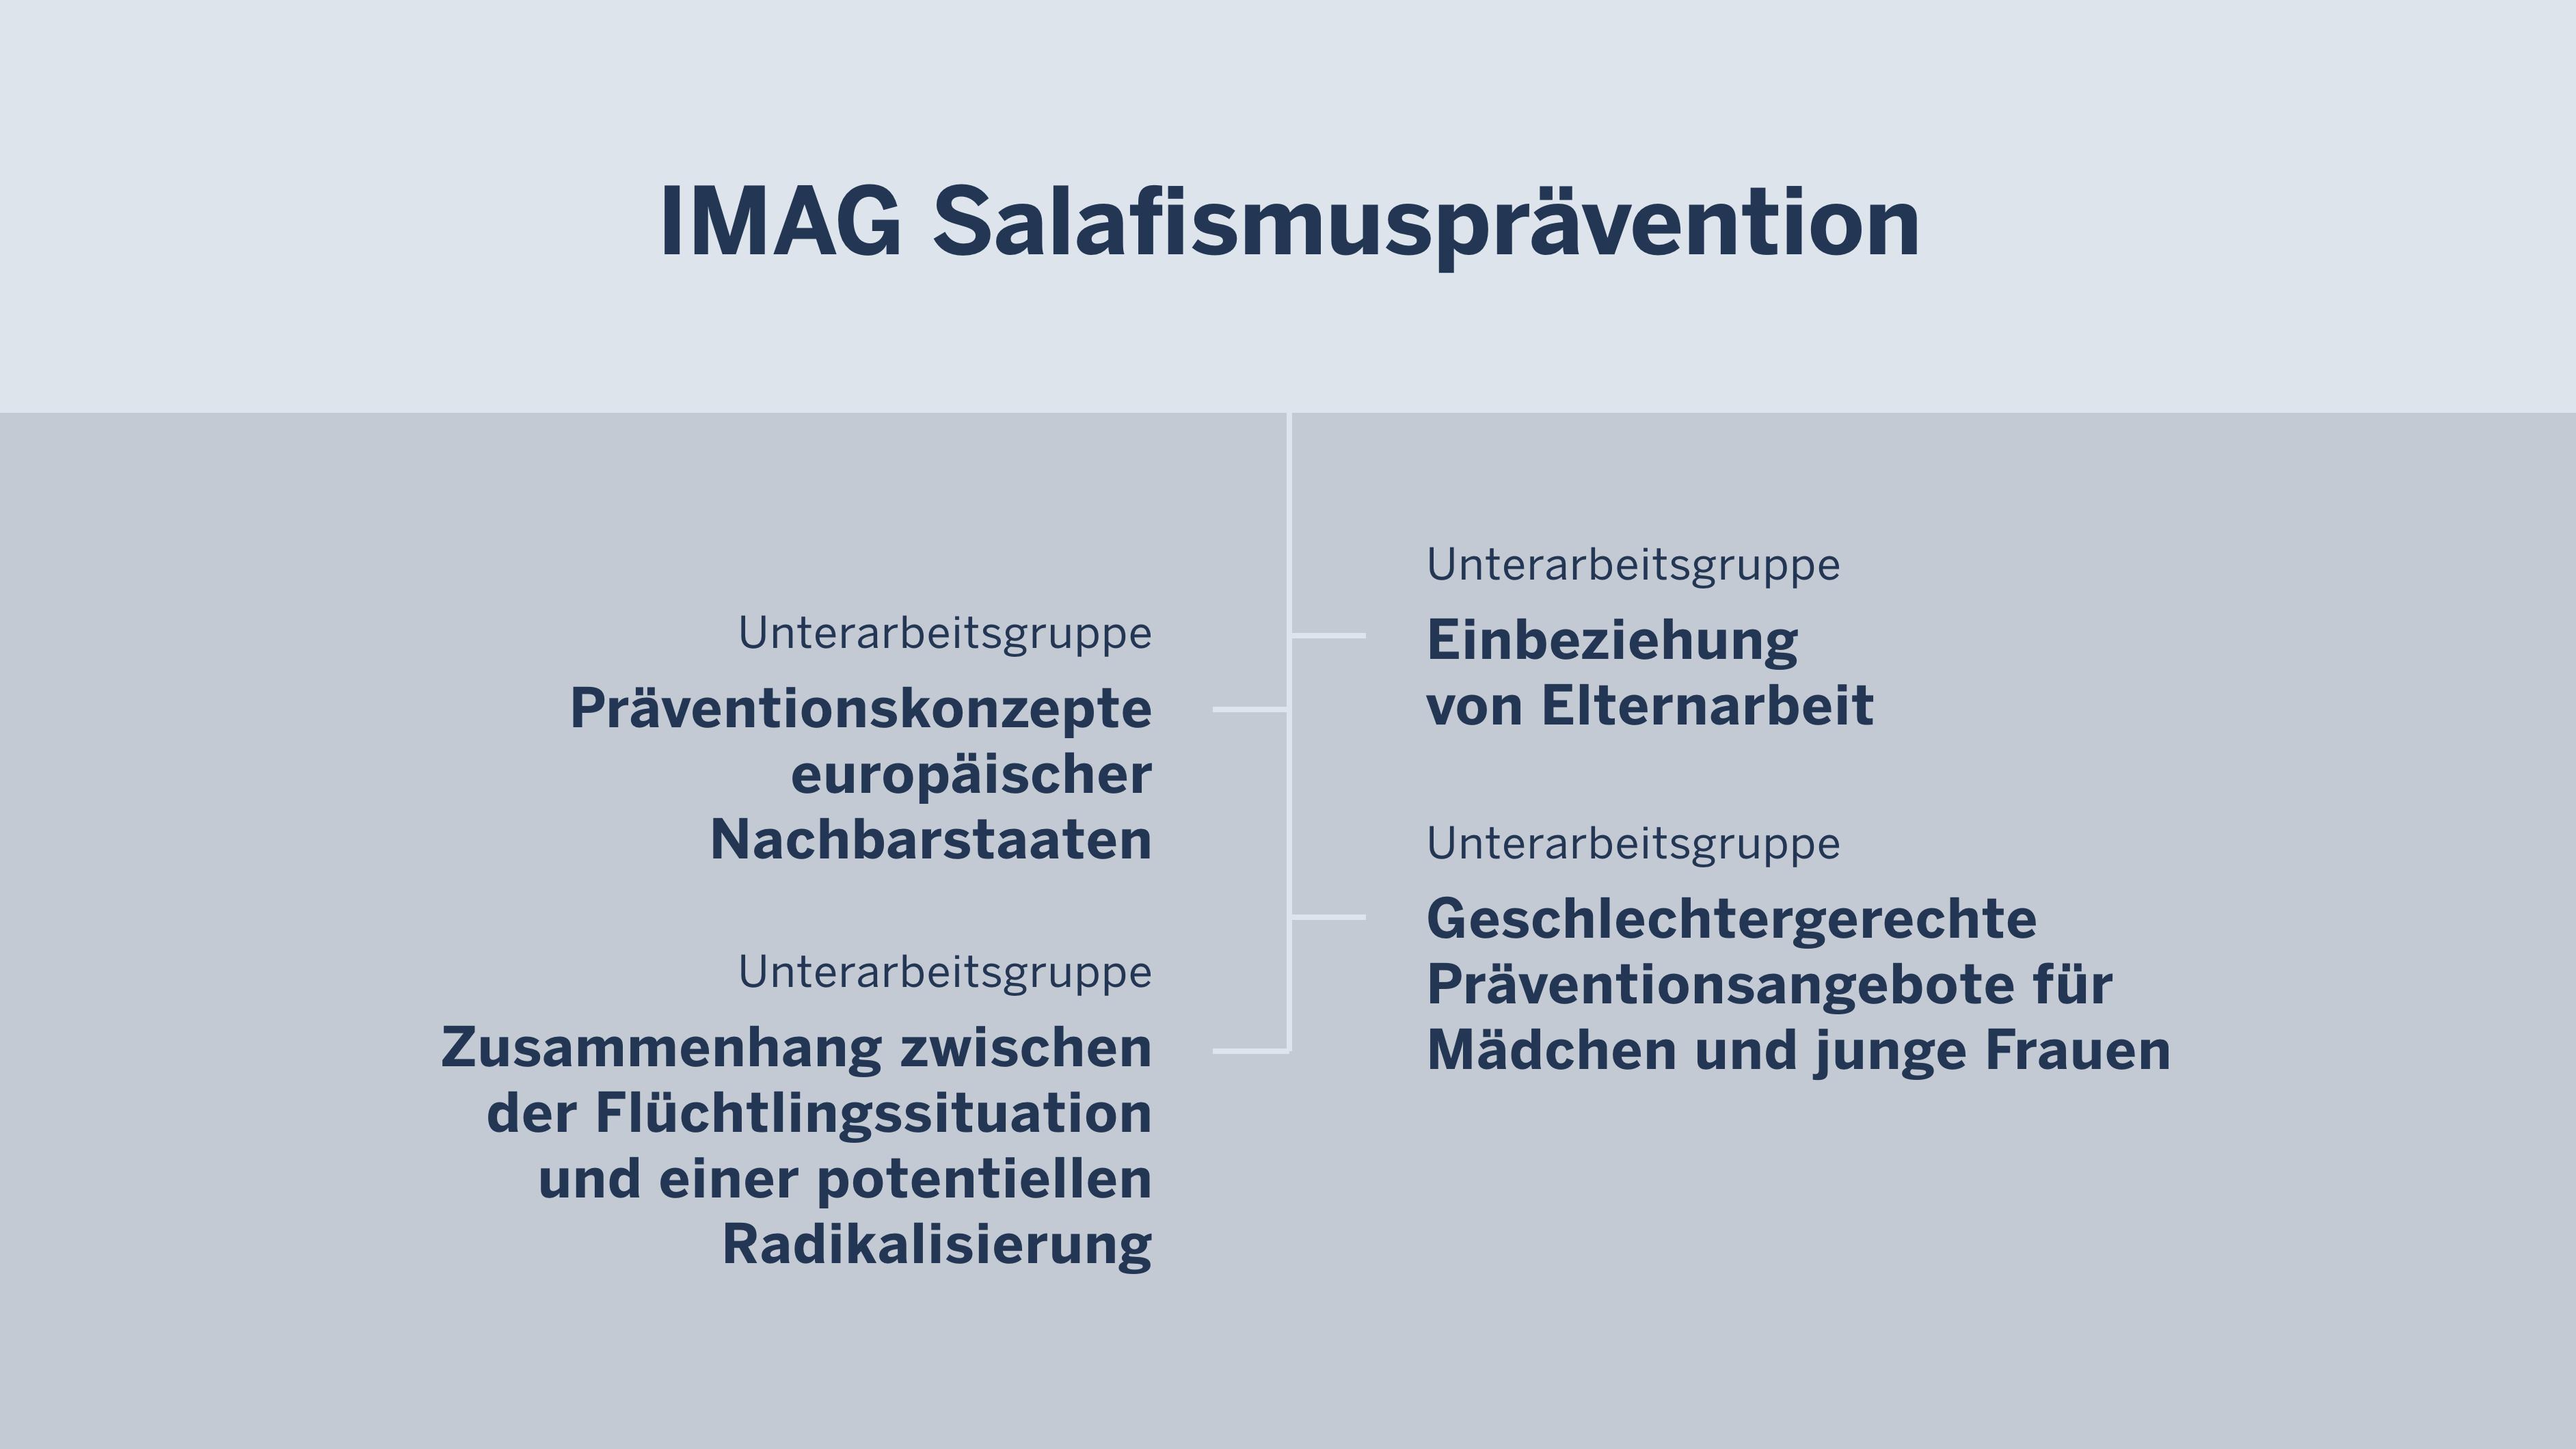 Organigramm der IMAG Salafismusprävention mit den Unterarbeitsgruppen.